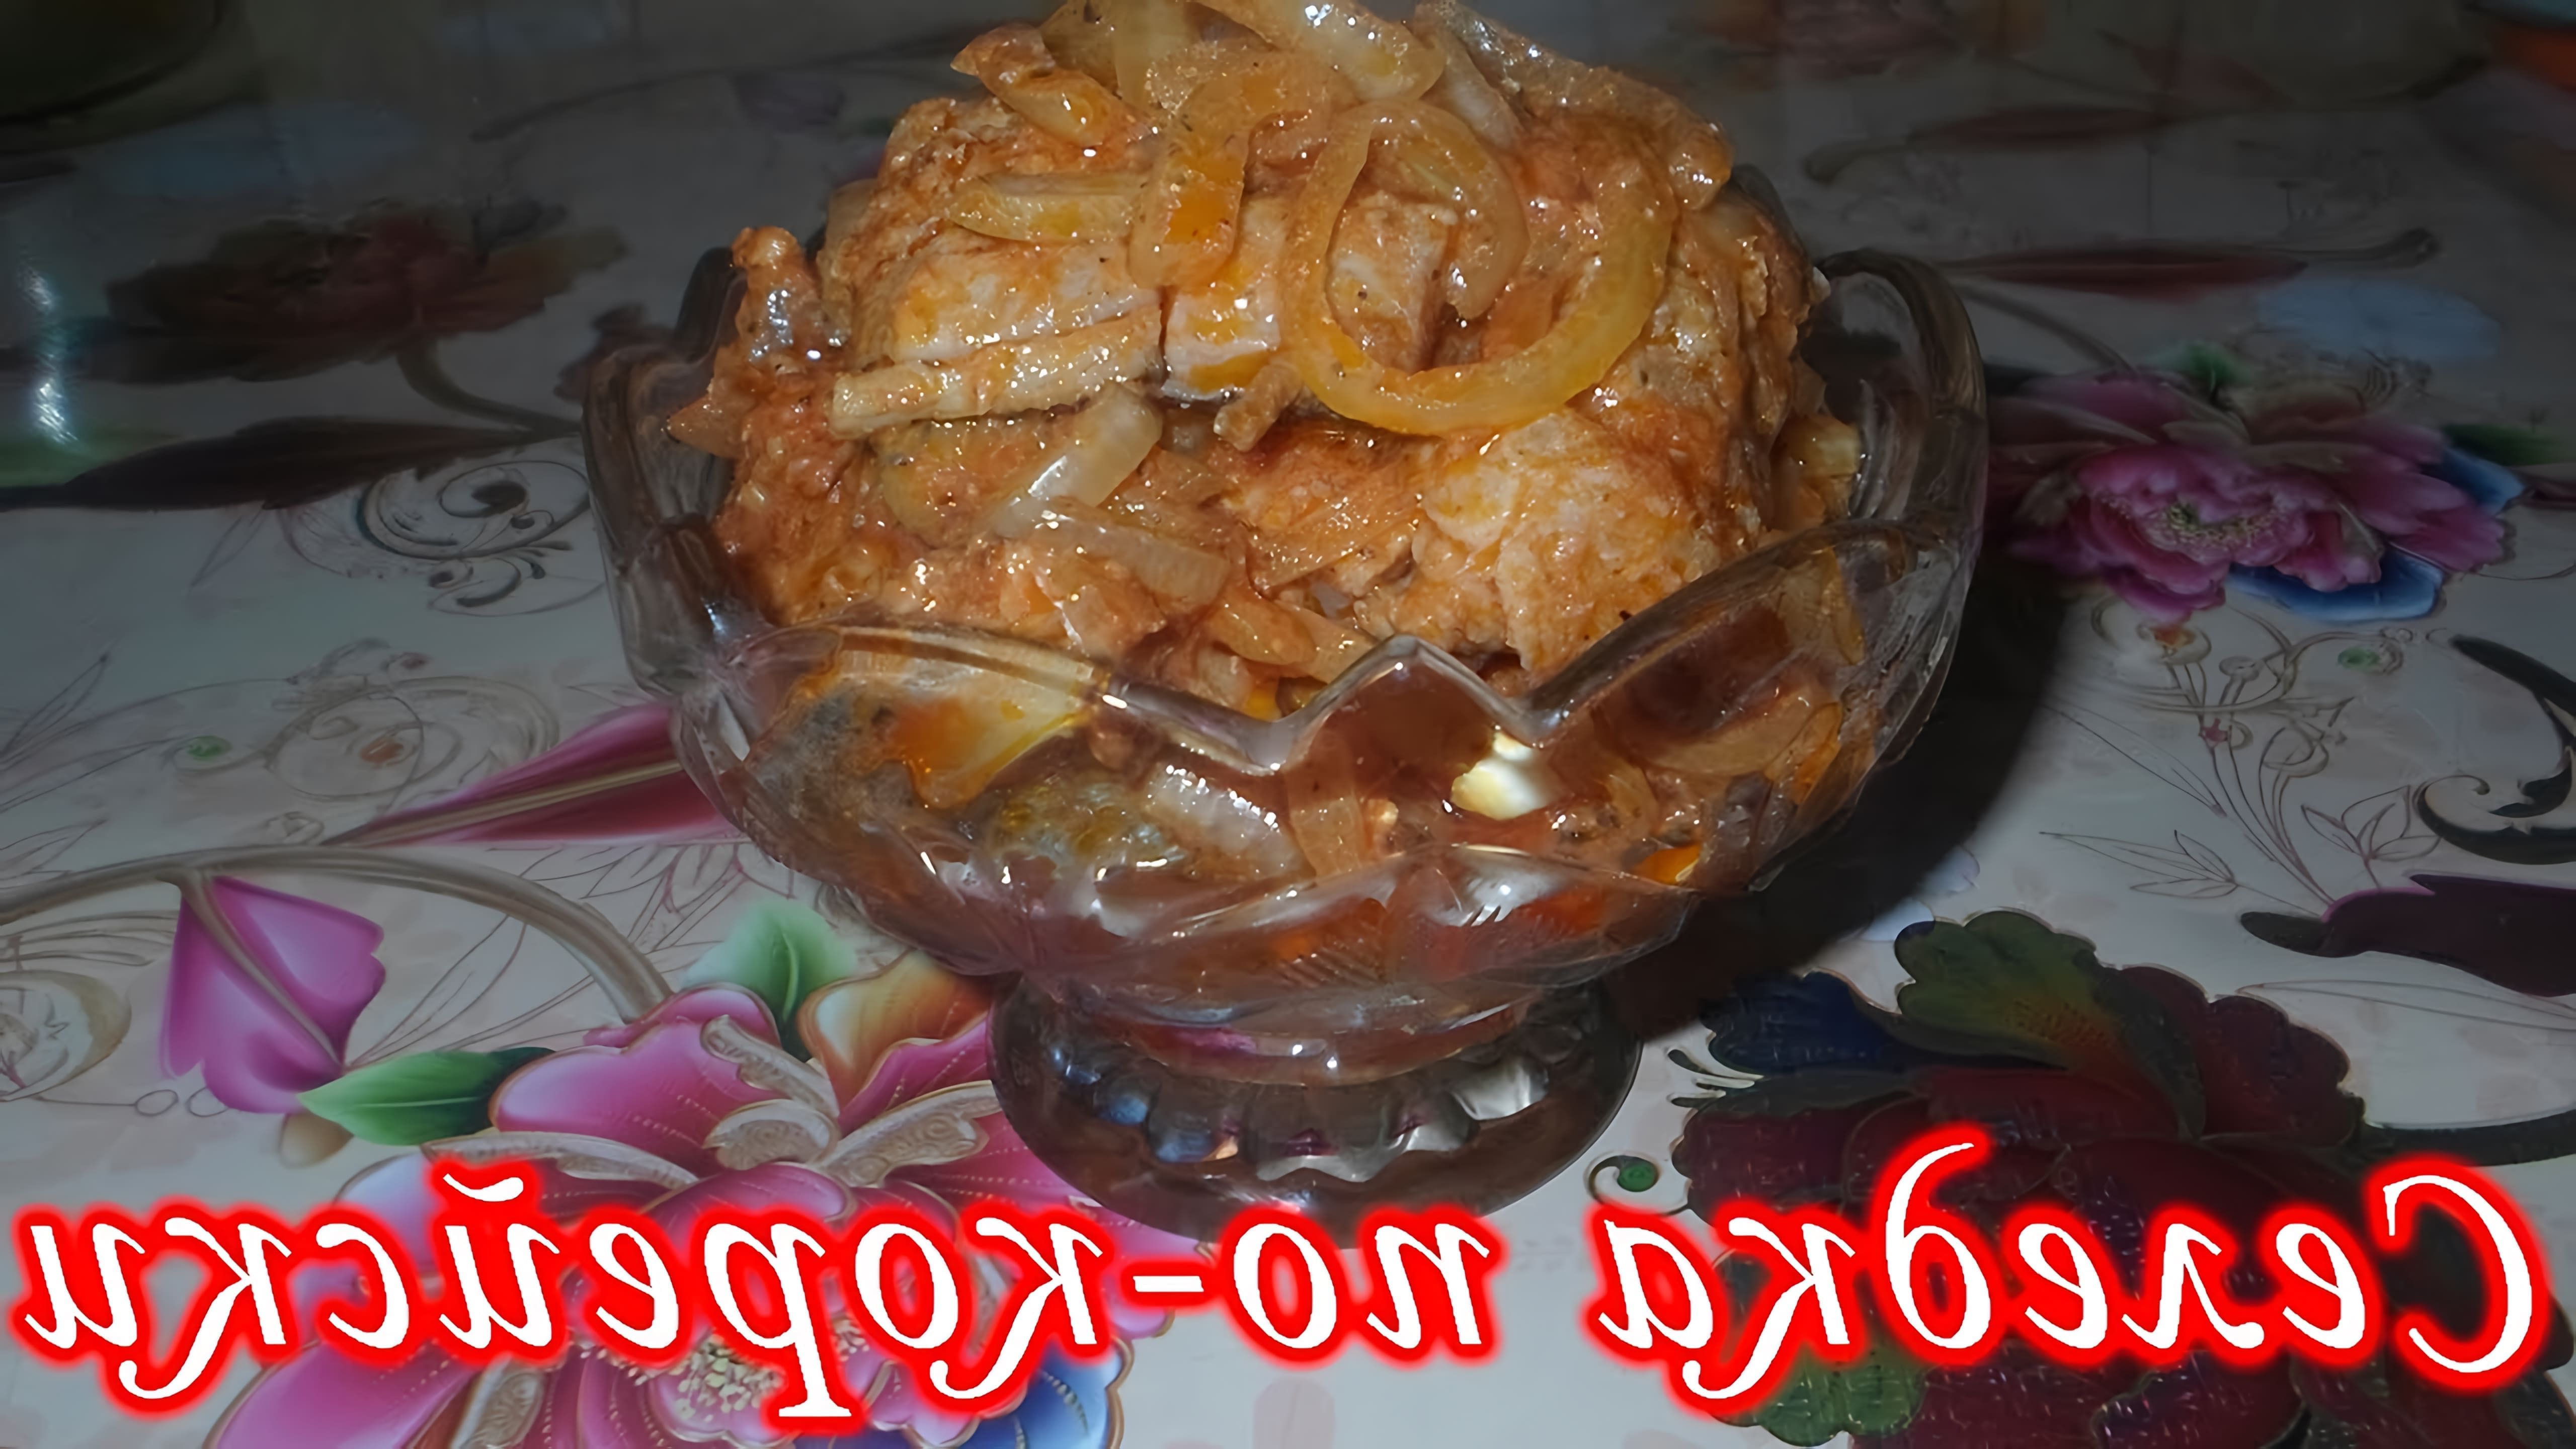 В этом видео демонстрируется рецепт приготовления селедки по-корейски с томатной пастой